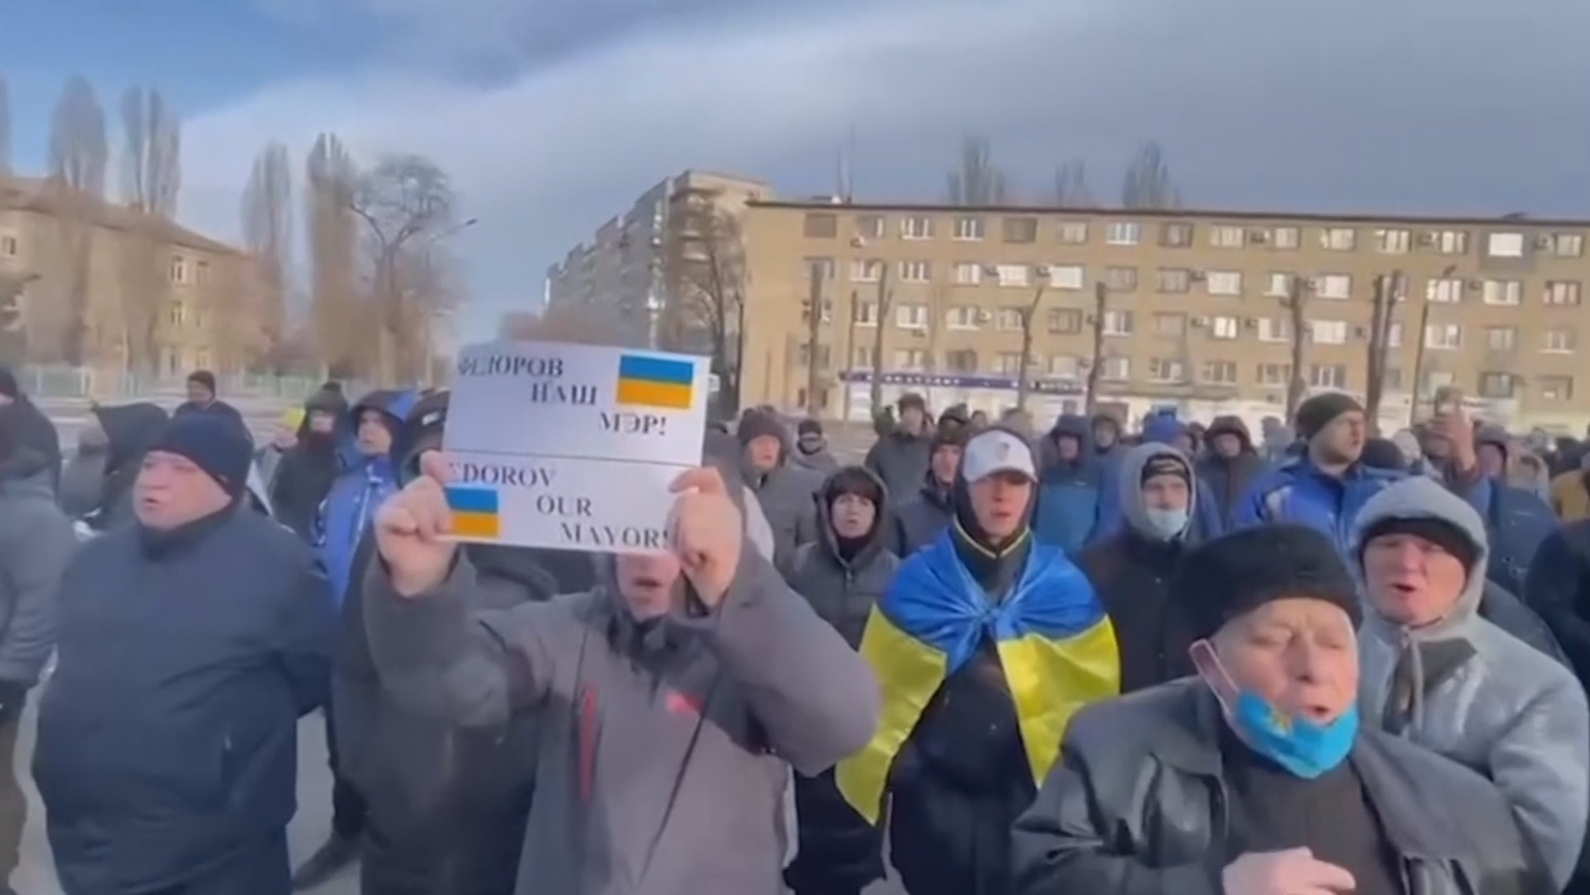 Lautstark forderten die Menschen in Melitopol die Freilassung ihres Bürgermeisters. (Bild: kameraOne)